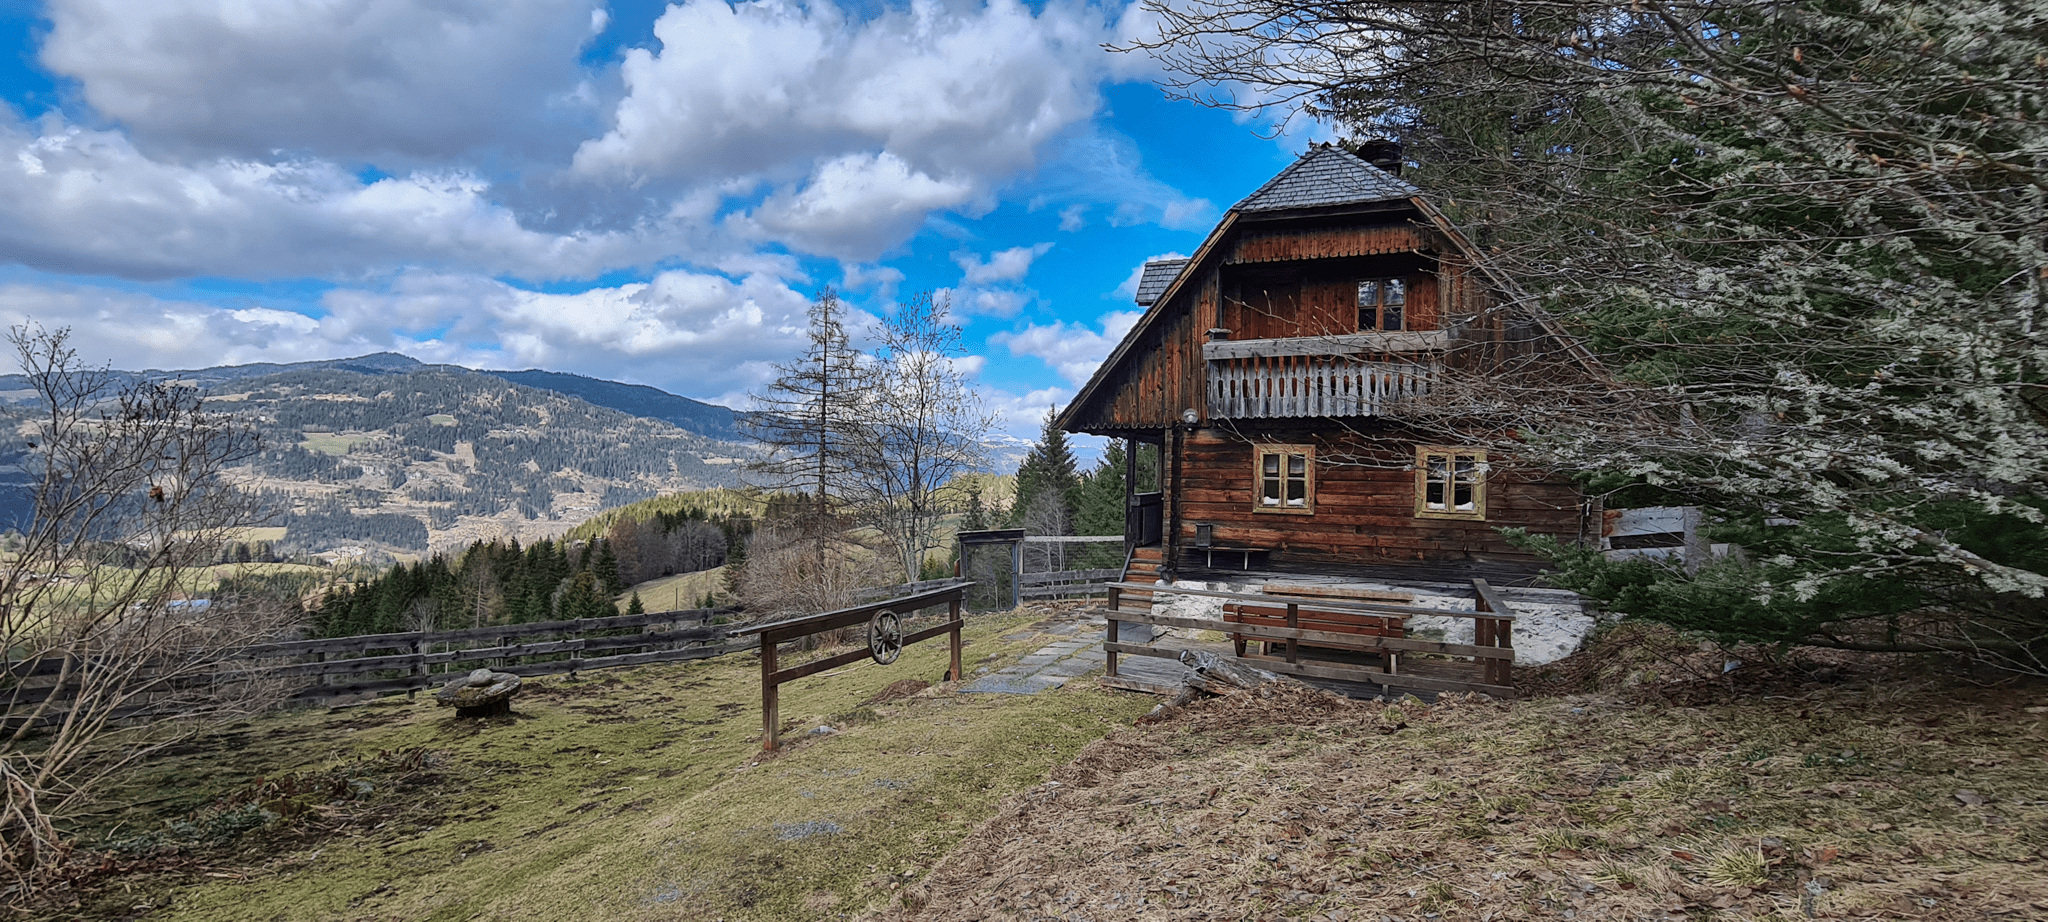 Hüttenurlaub in Murau ©Claudia Spieß